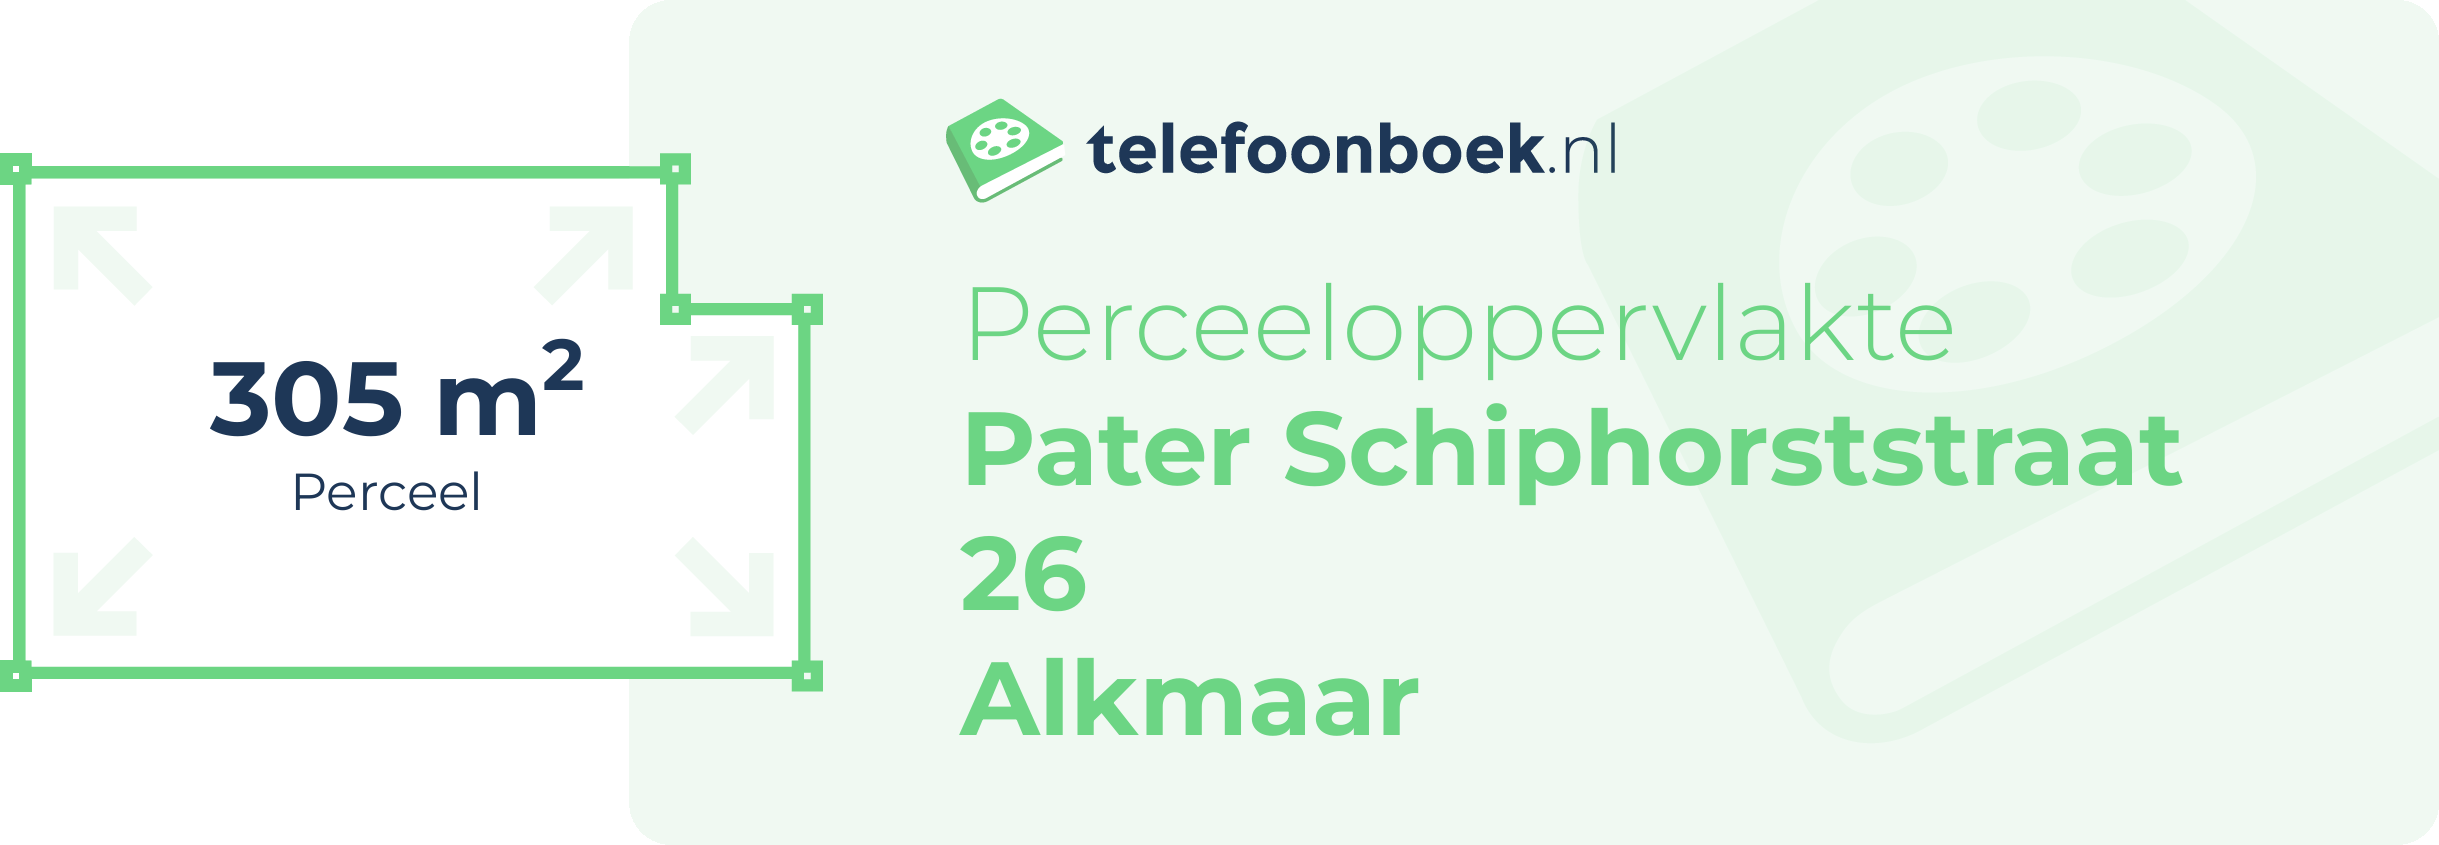 Perceeloppervlakte Pater Schiphorststraat 26 Alkmaar